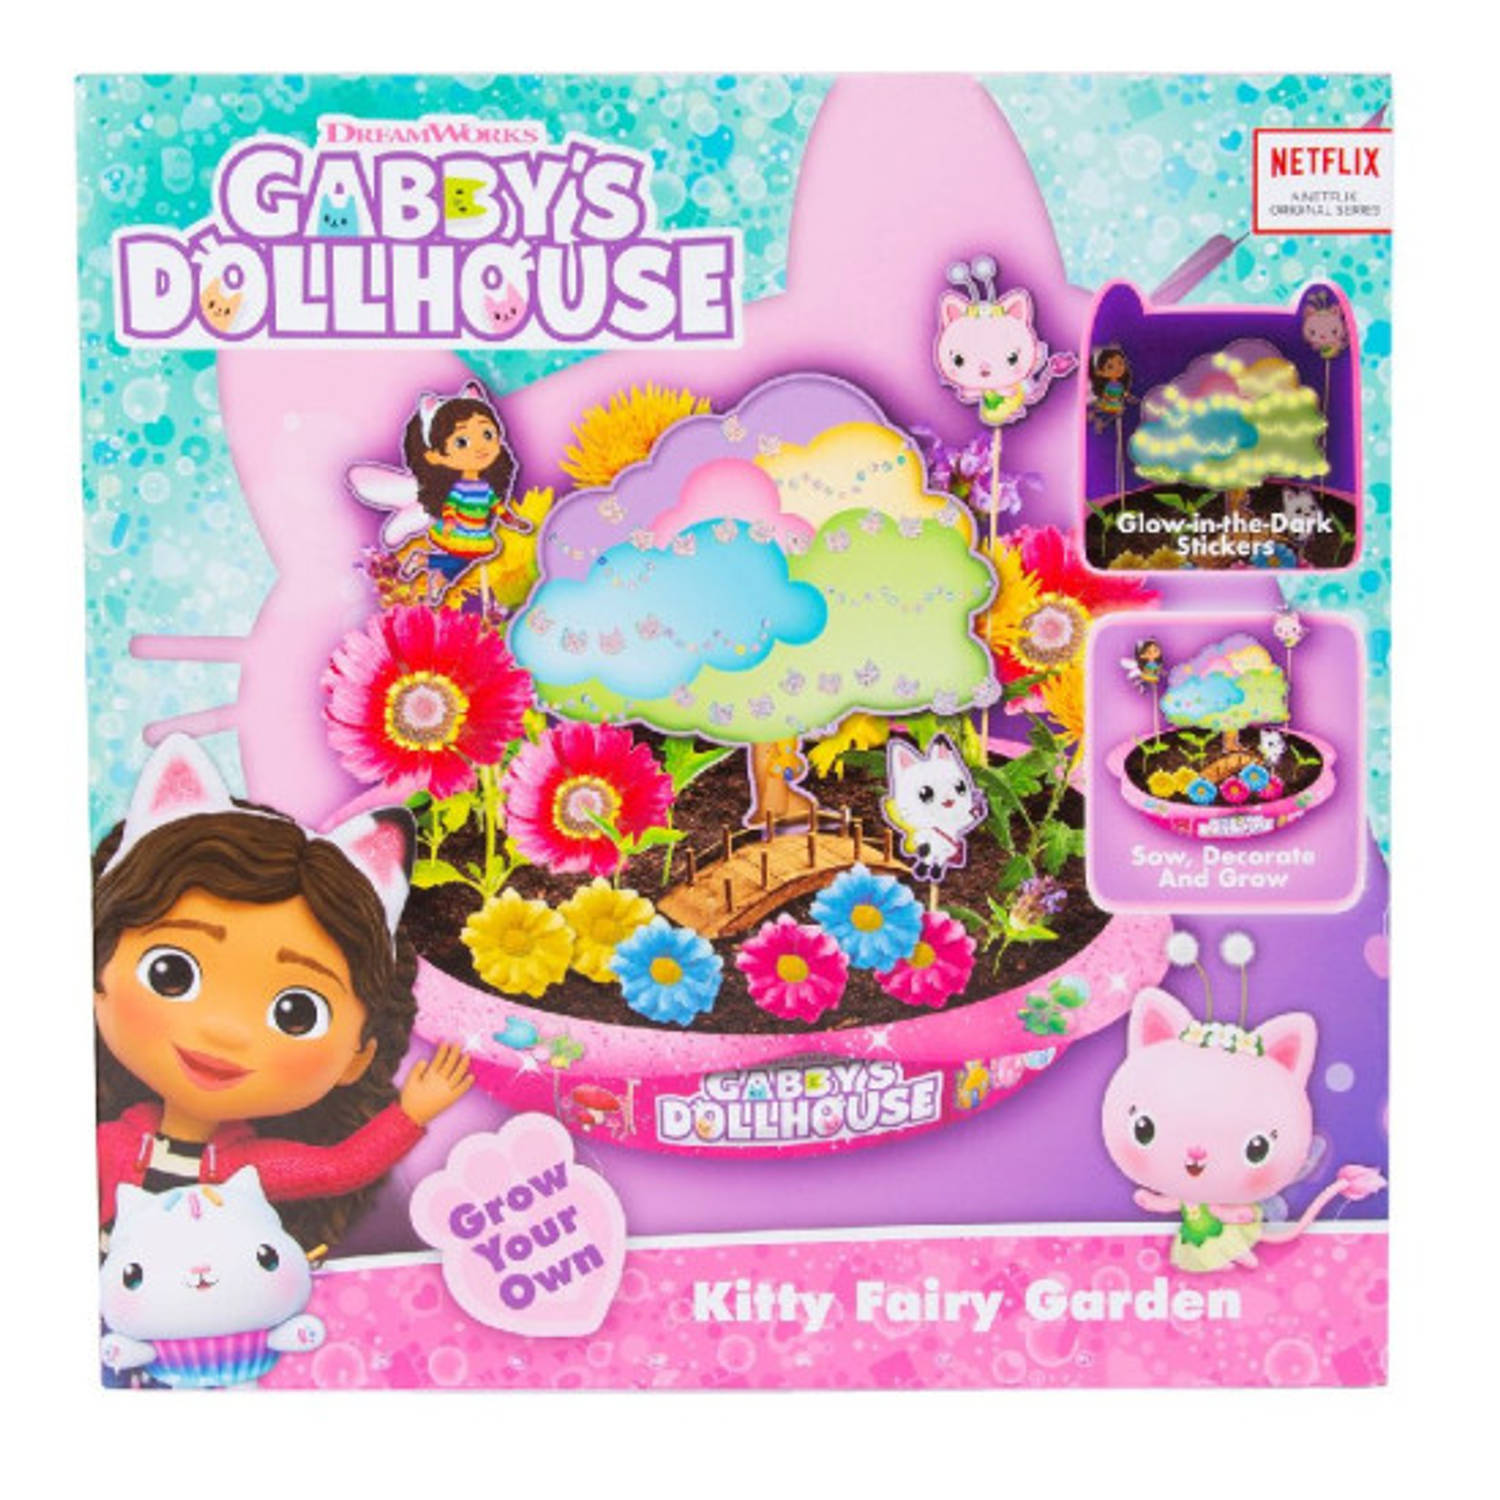 Gabby's Dollhouse Kitty Fairy Garden - Knutselpakket